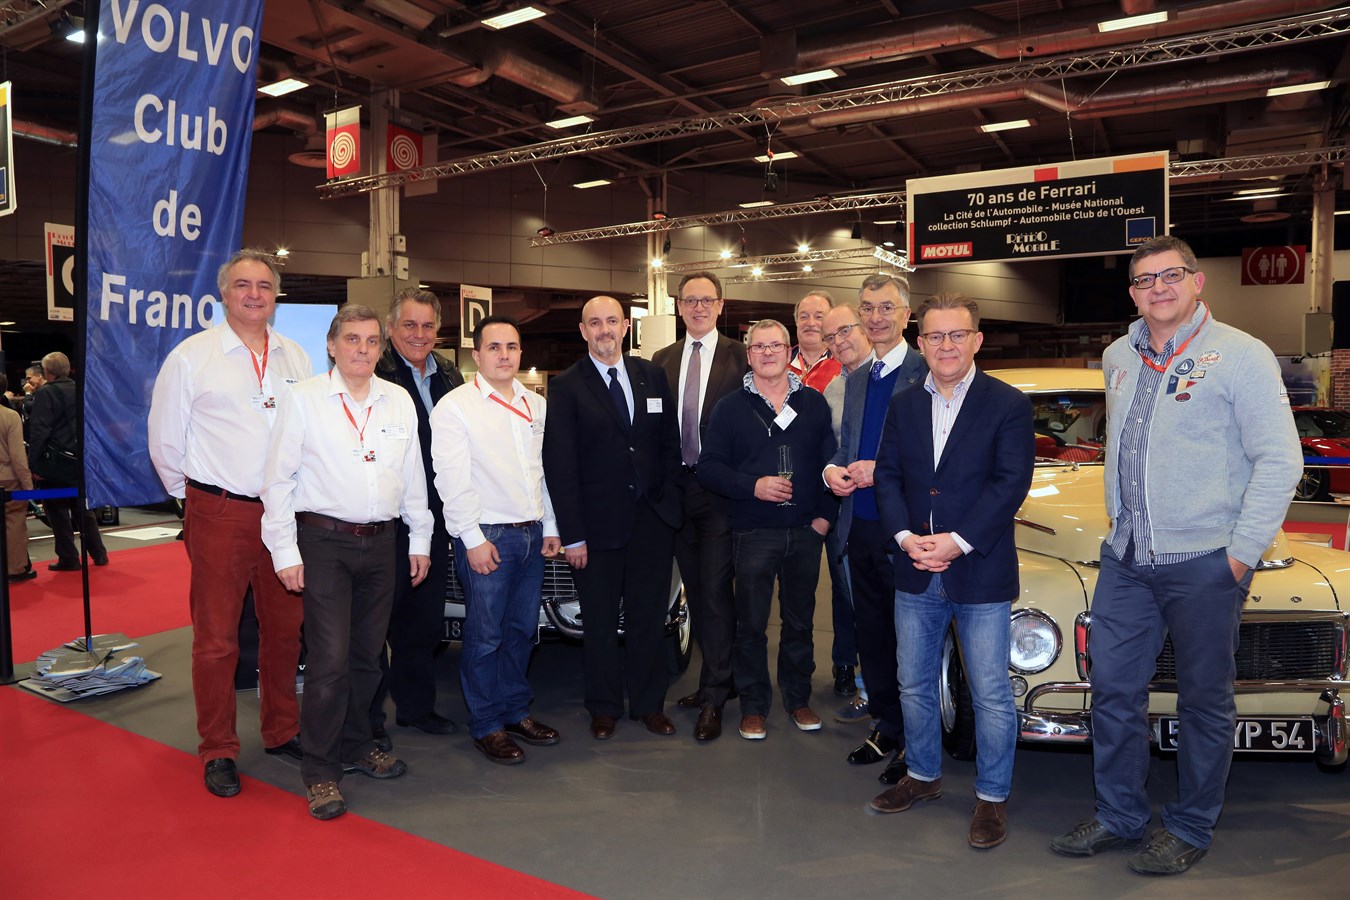 Rétromobile 2017 - le Volvo Club de France célébre les 90 ans de la marque 1927-2017 